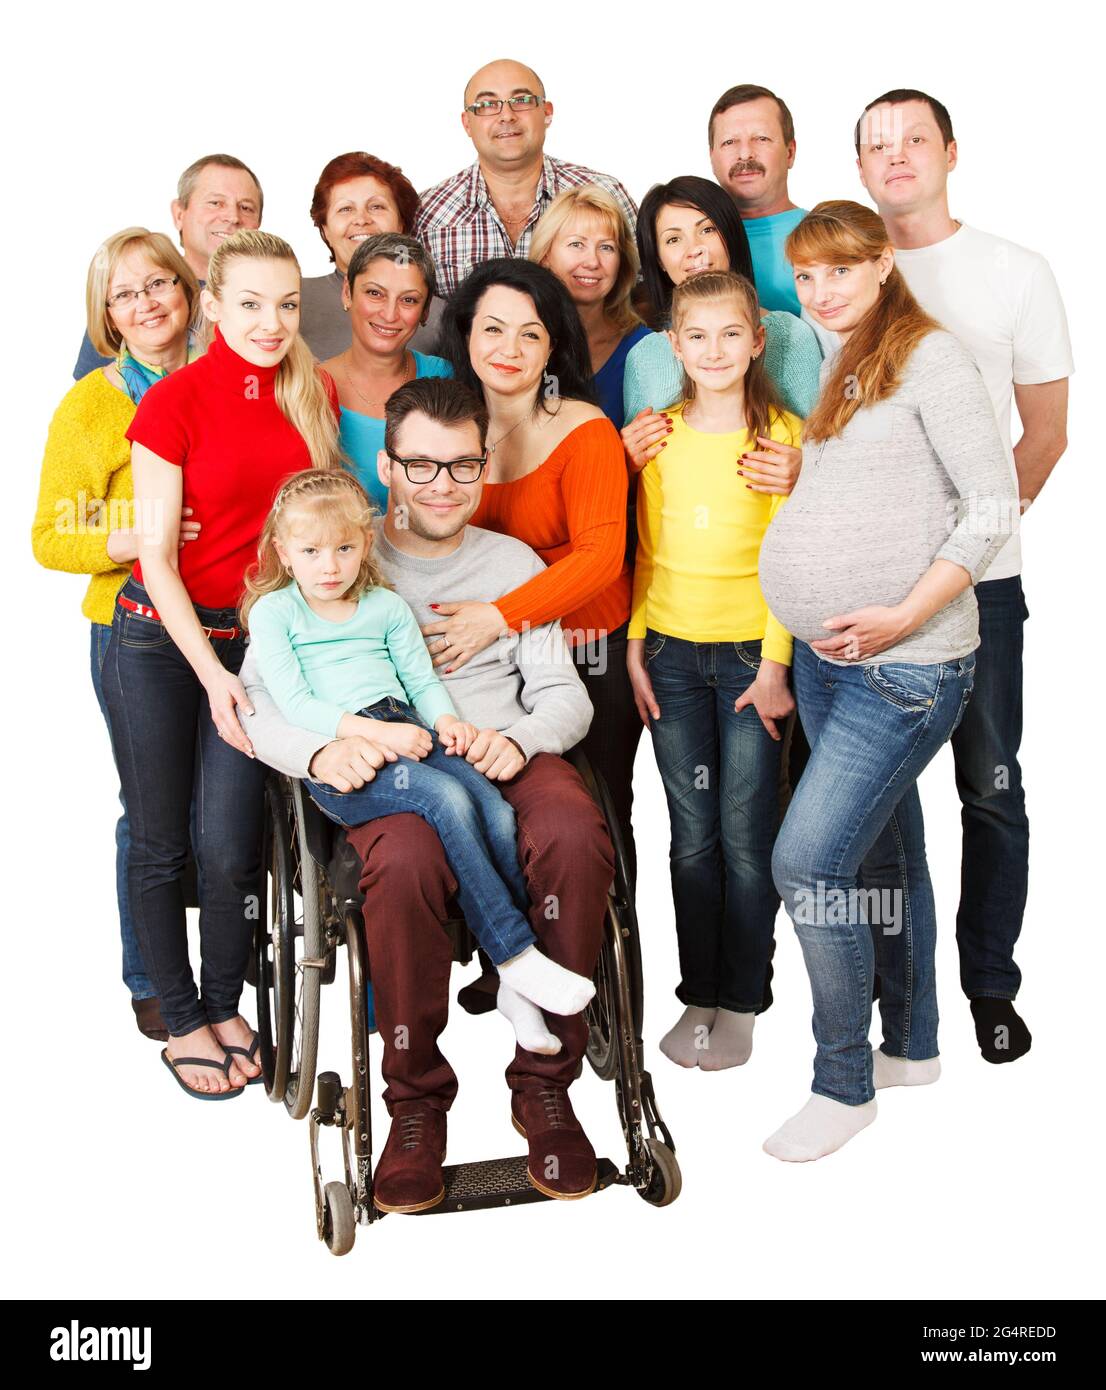 Porträt einer großen Gruppe von Menschen aus dem Mischalter, die lächeln und sich mit behinderten Menschen umarmen. Stockfoto